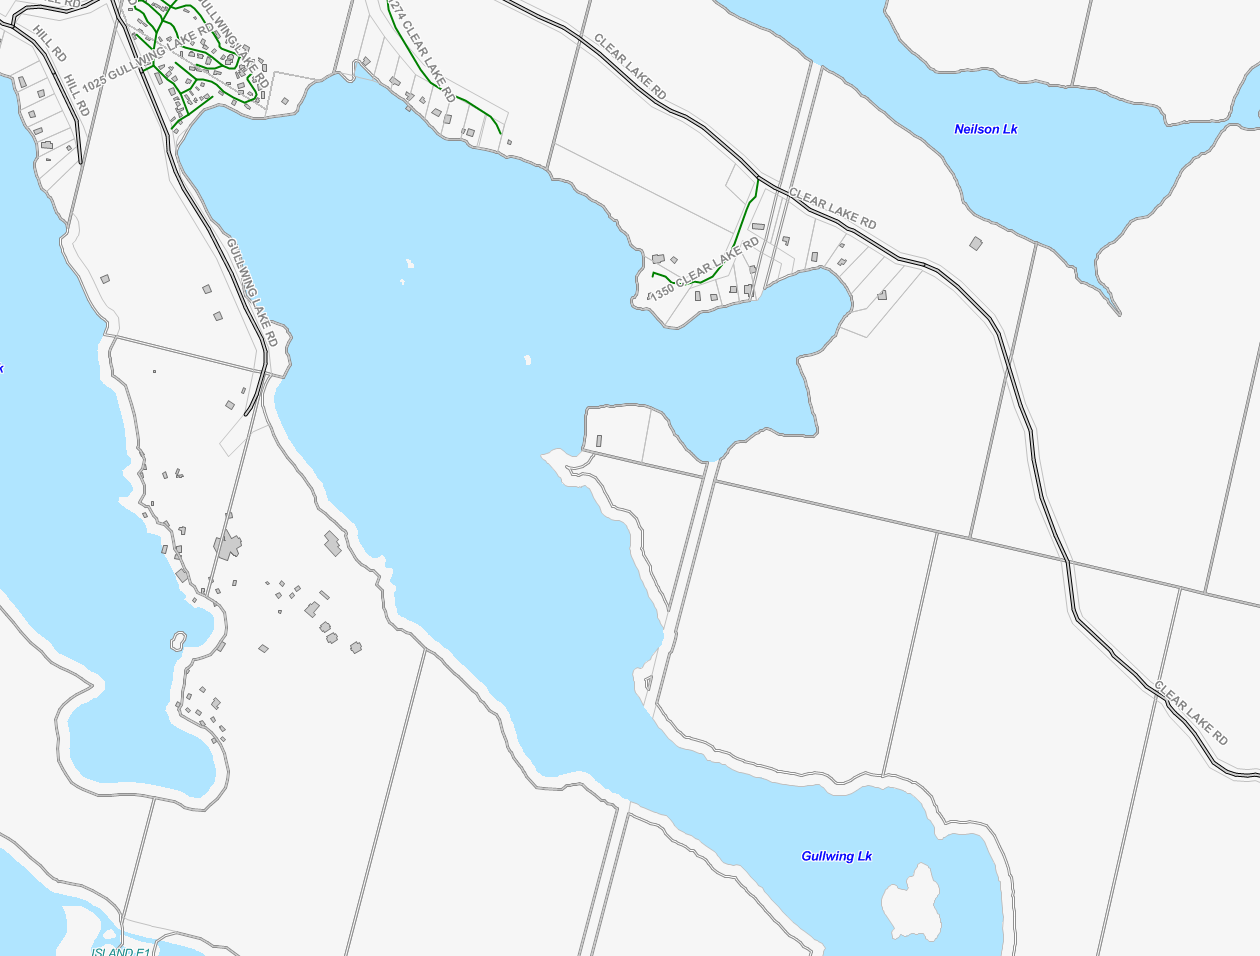 Gullwing Lake Cadastral Map - Gullwing Lake - Muskoka